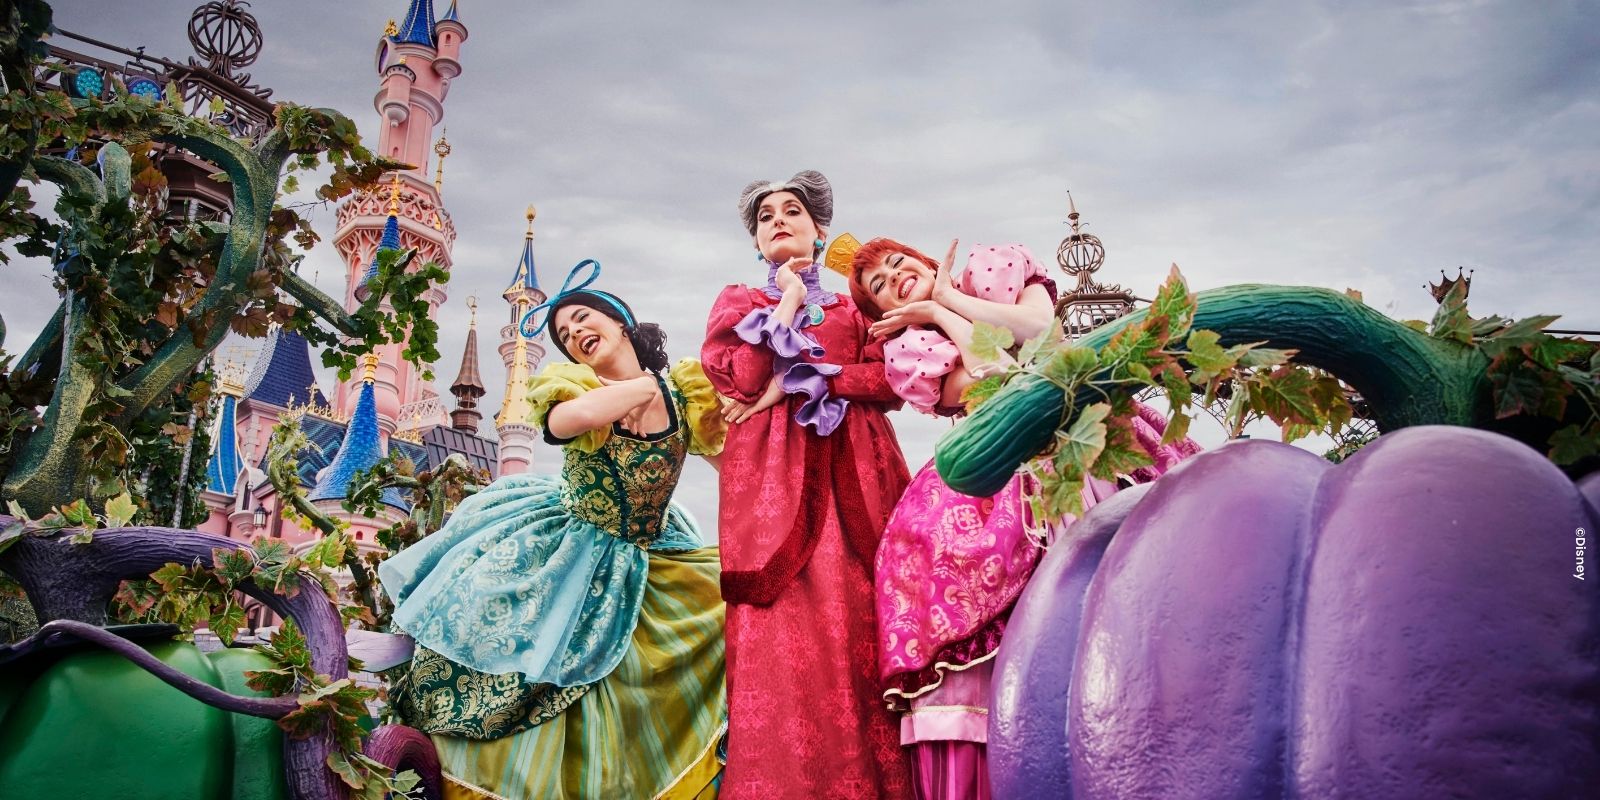 Disney Prinsessen in Halloween kostuum en pompoenen